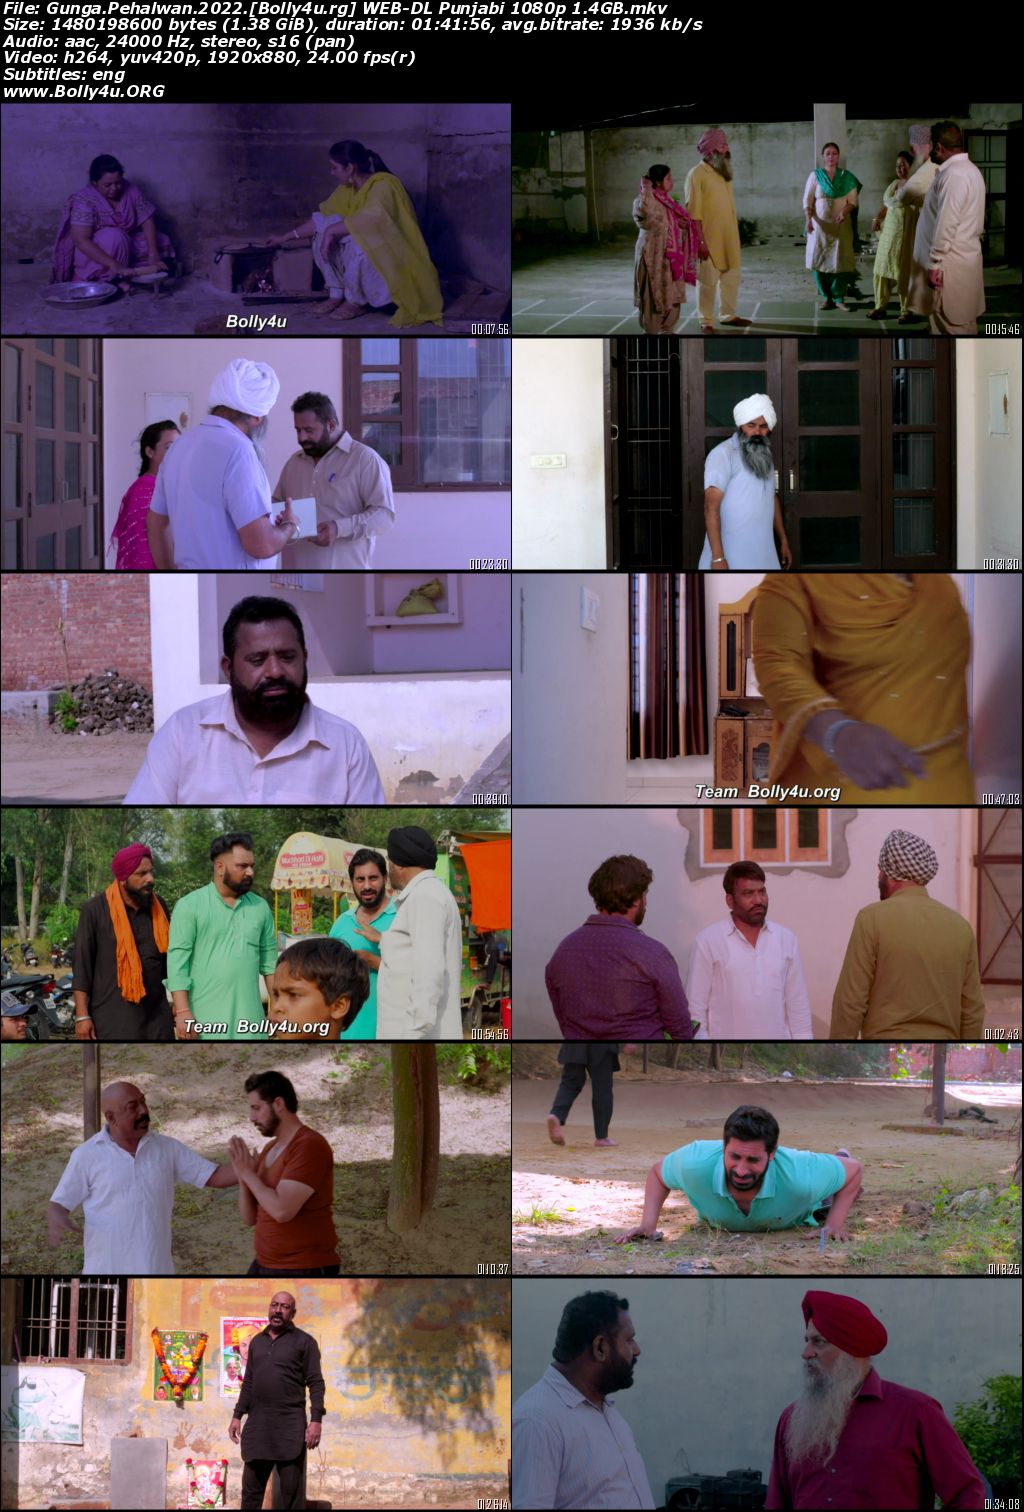 Gunga Pahalwan 2022 WEB-DL Punjabi Full Movie Download 1080p 720p 480p